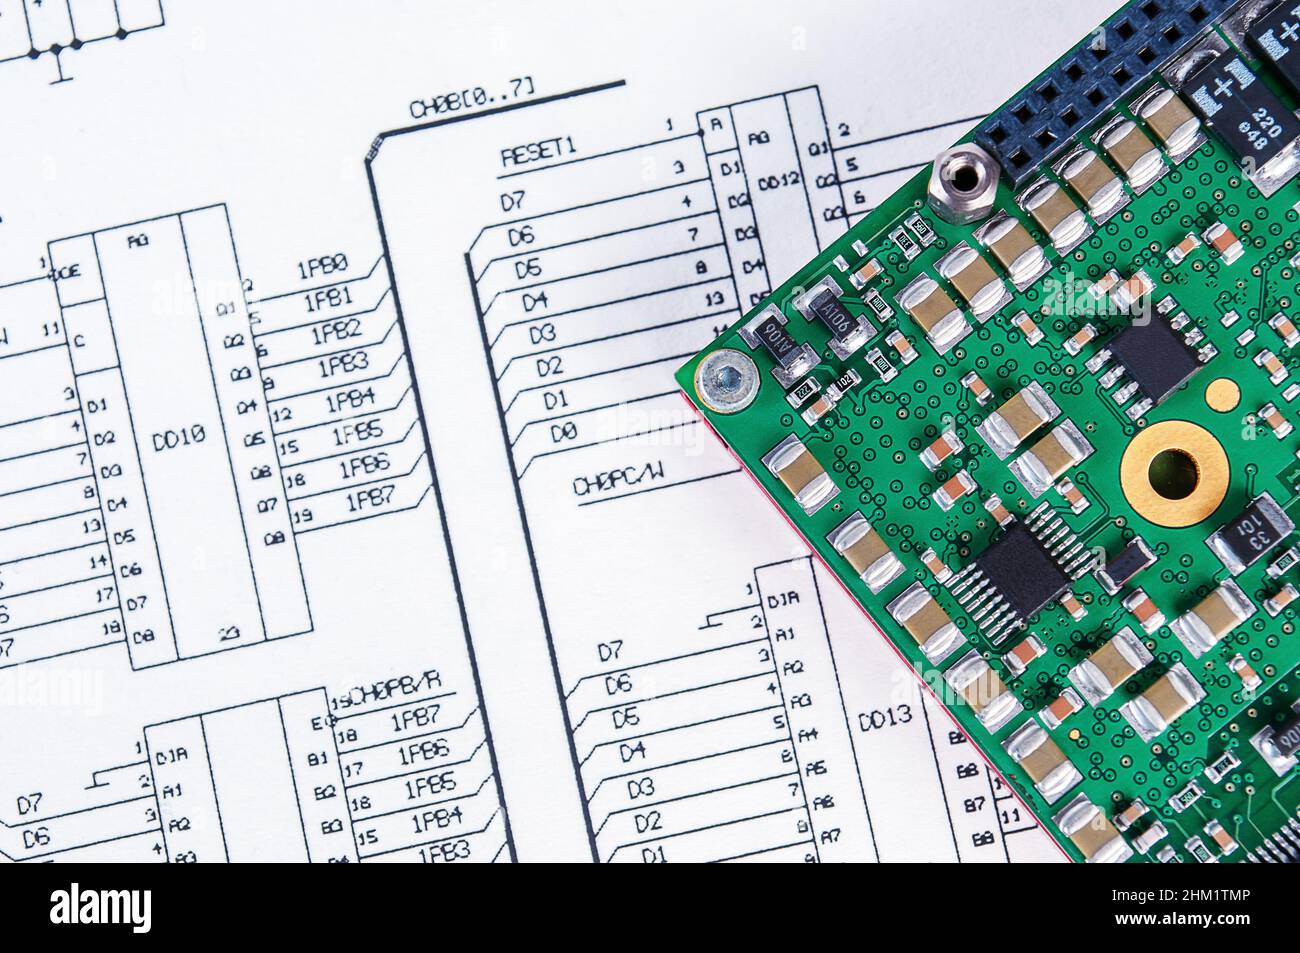 Elektronikkarte auf dem Hintergrund des Schaltplans. Konzept für die Entwicklung und Konstruktion von elektronischen Geräten. Stockfoto